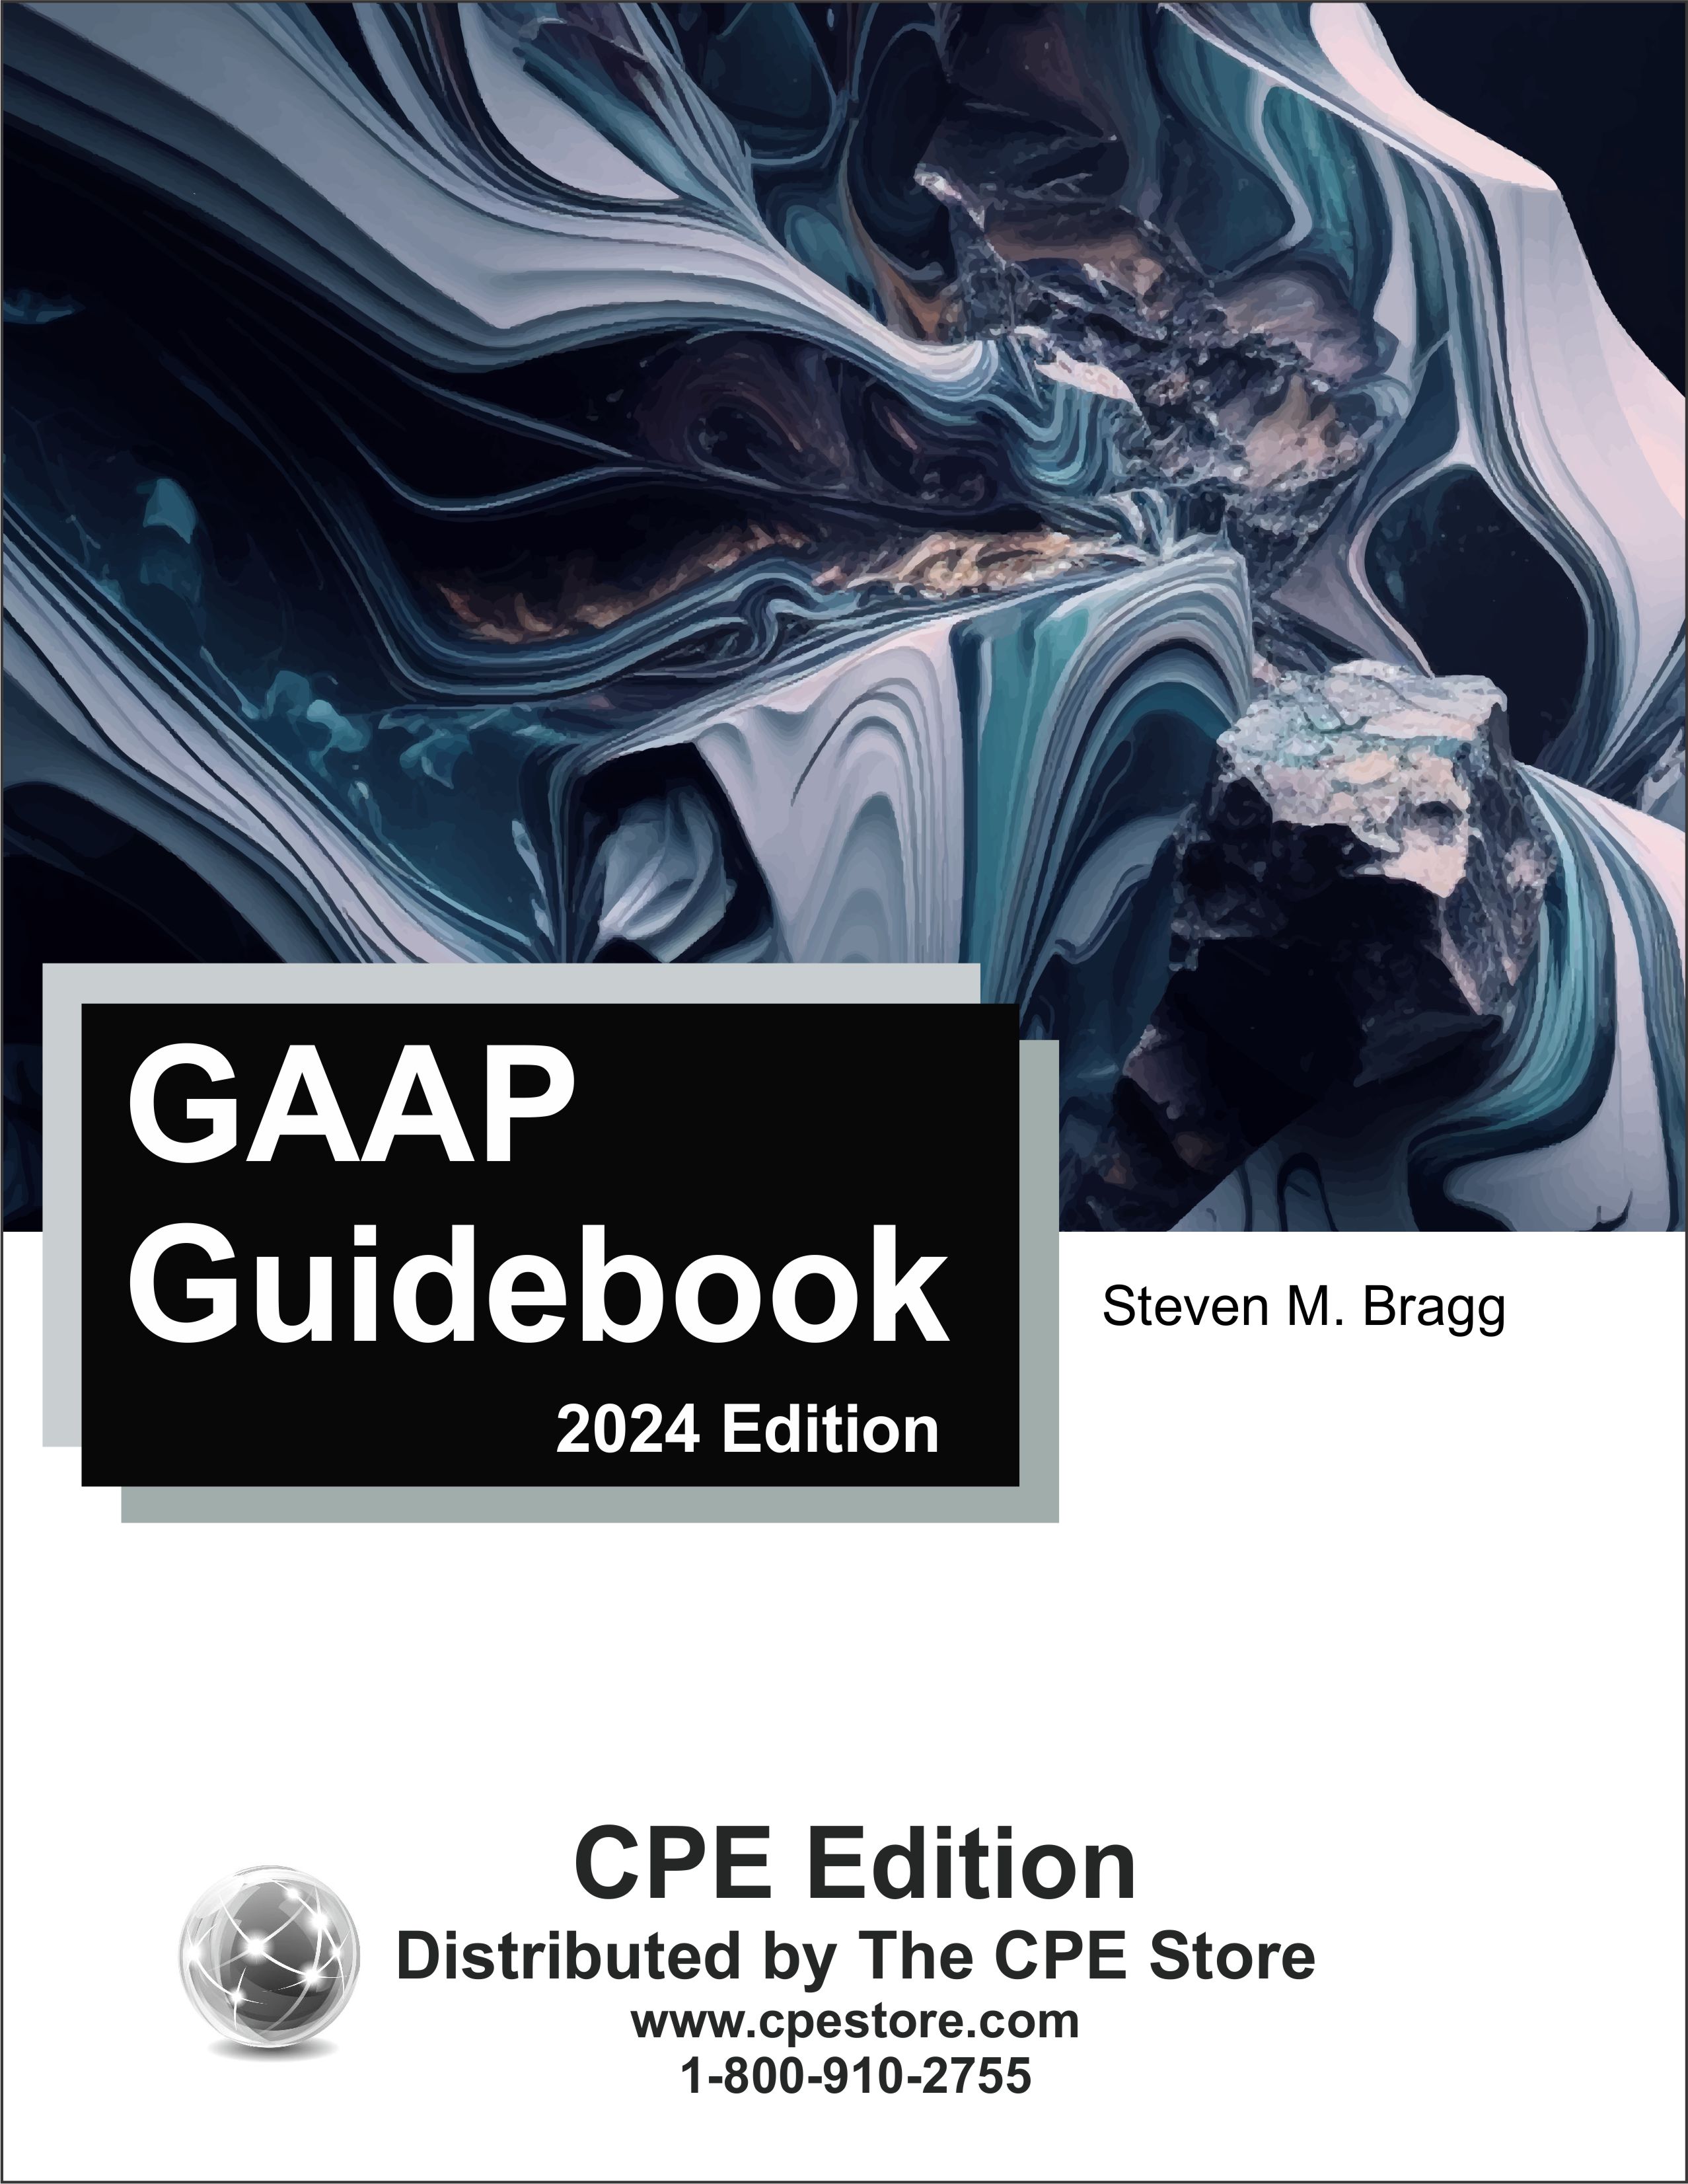 GAAP Guidebook 2024